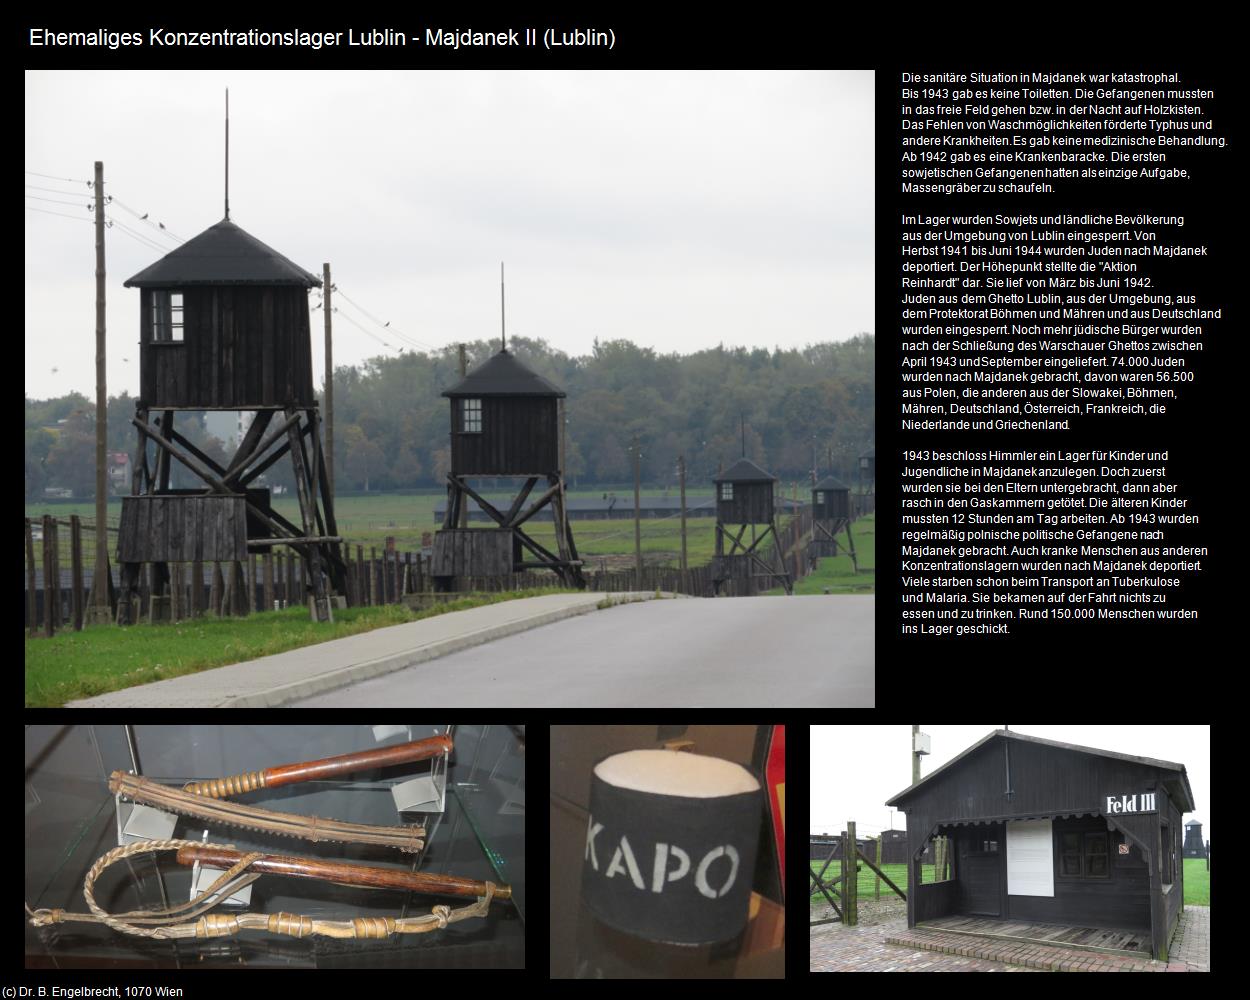 Ehem. Konzentrationslager Lublin - Majdanek II (Lublin) in POLEN-Galizien